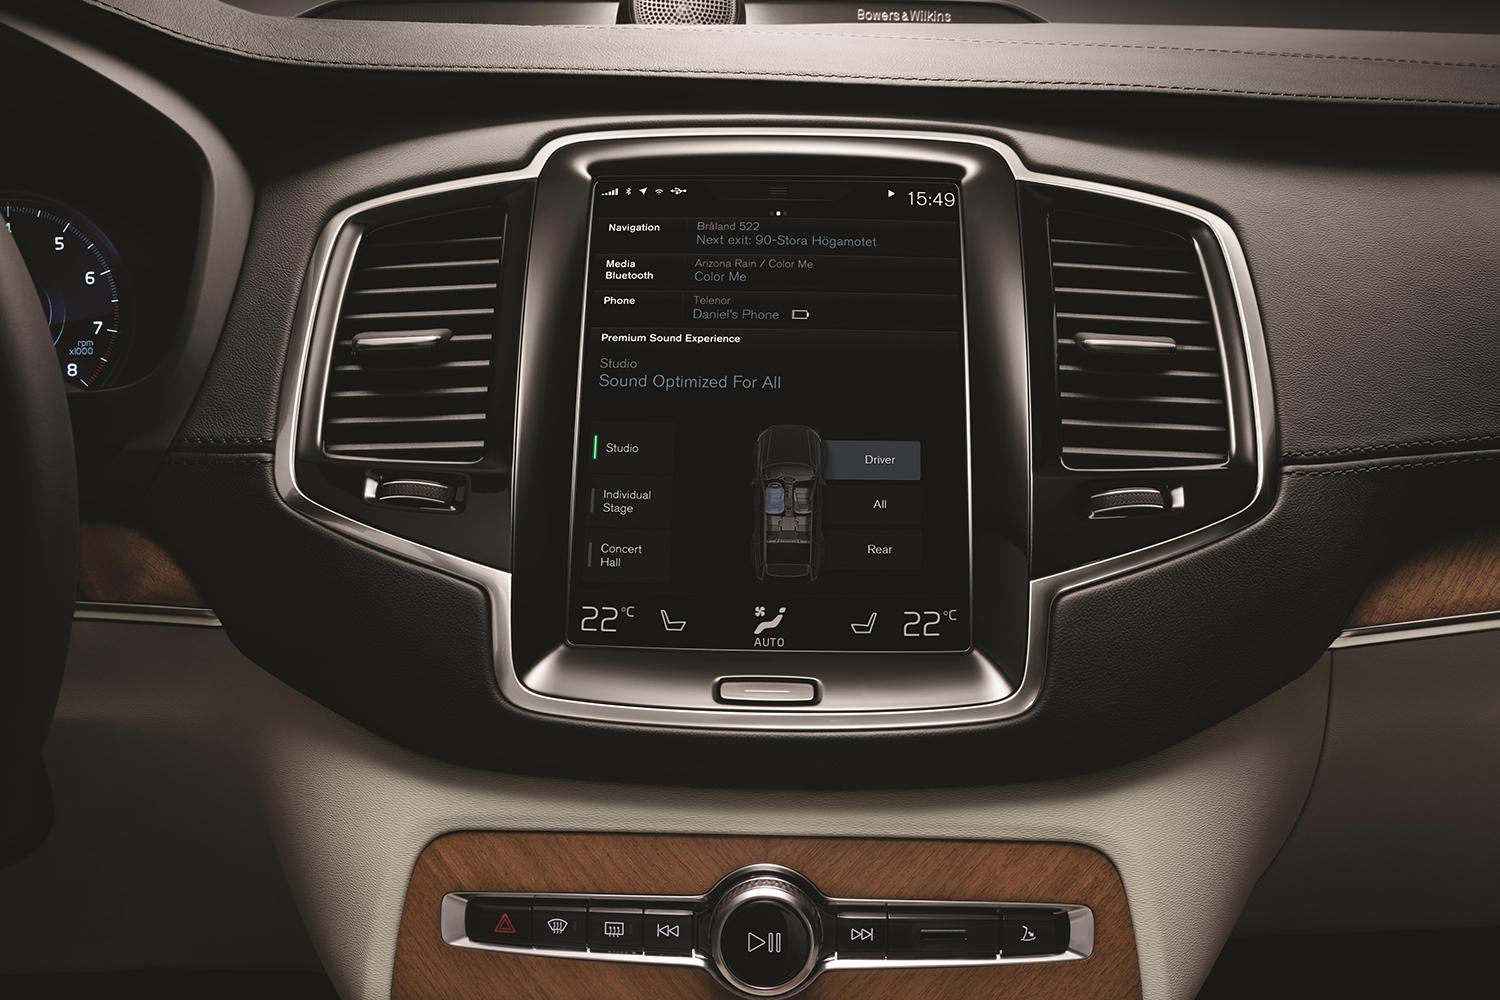 2015 Volvo XC90 infotainment